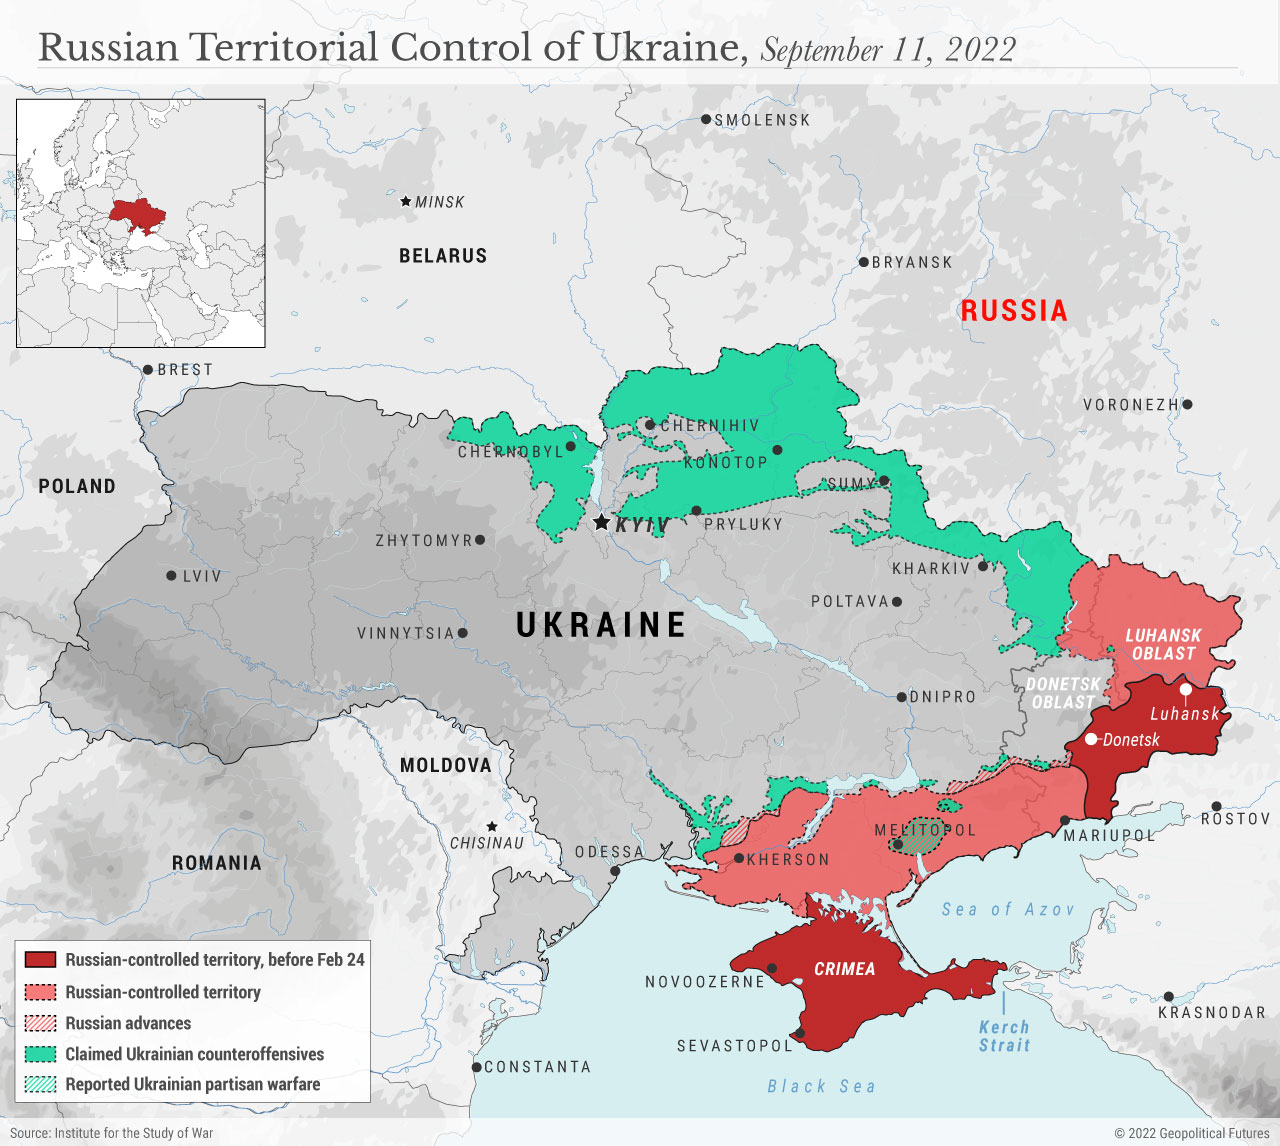 Russian Territorial Control of Ukraine, 9/11/22